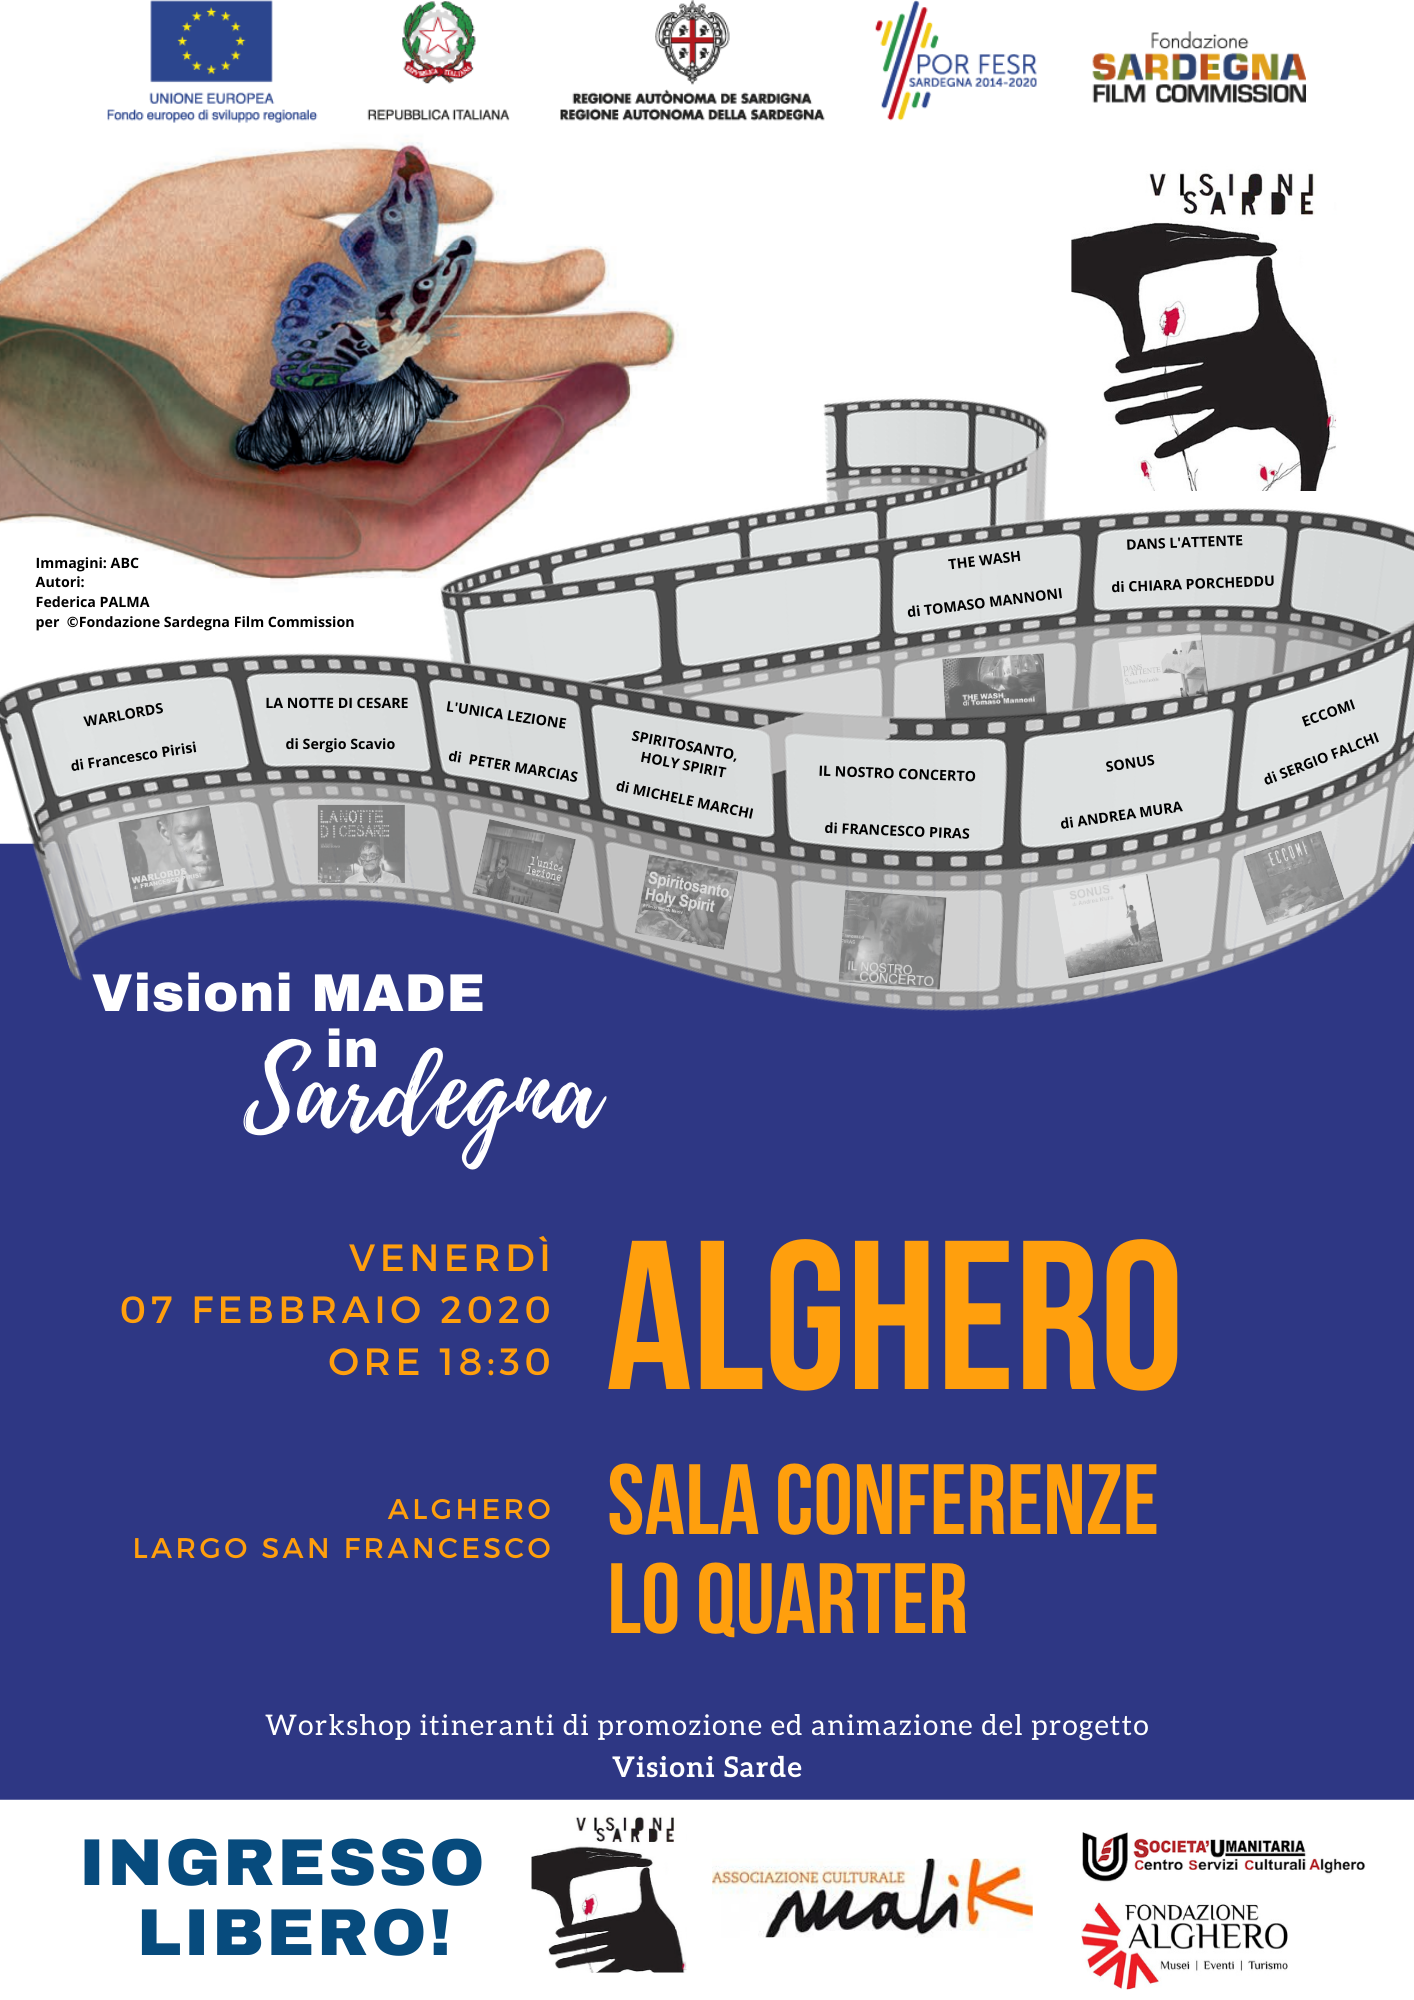 “Visioni made in Sardegna” protagonista ad Alghero, venerdì 7 febbraio proiezioni per la comunità